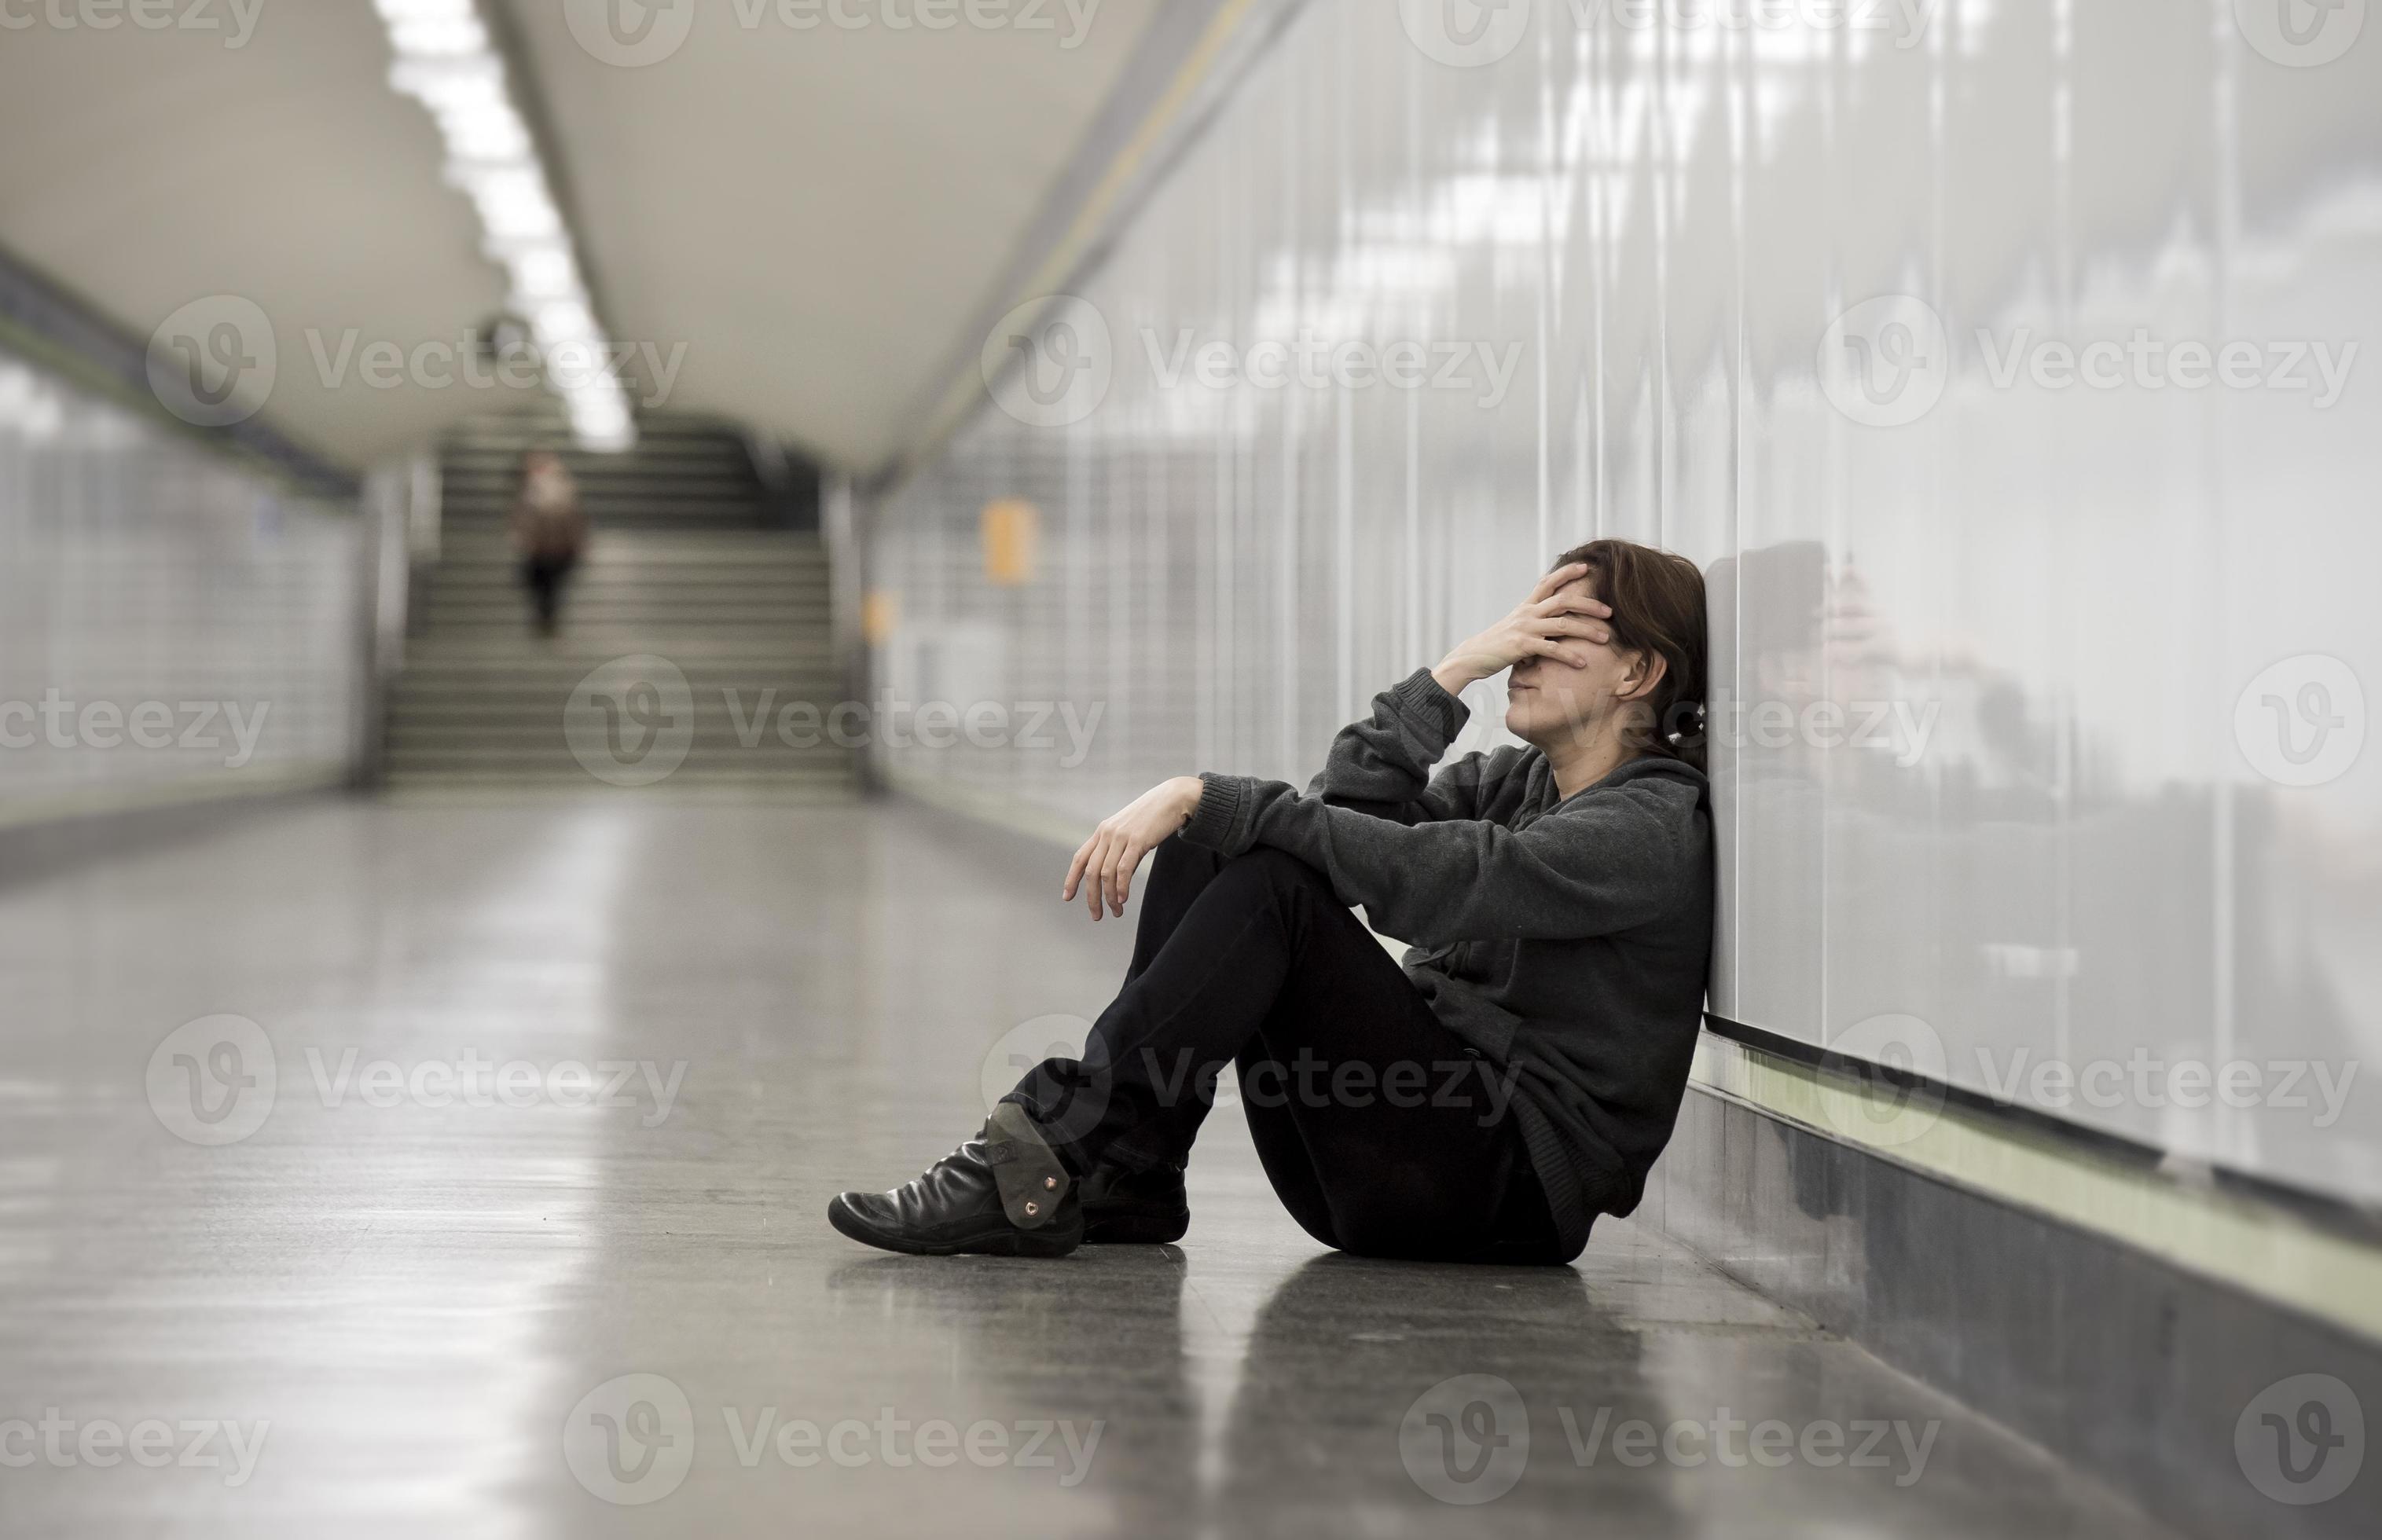 Jeune Femme Triste Dans La Douleur Seule Deprimee Au Tunnel De Metro Banque De Photos